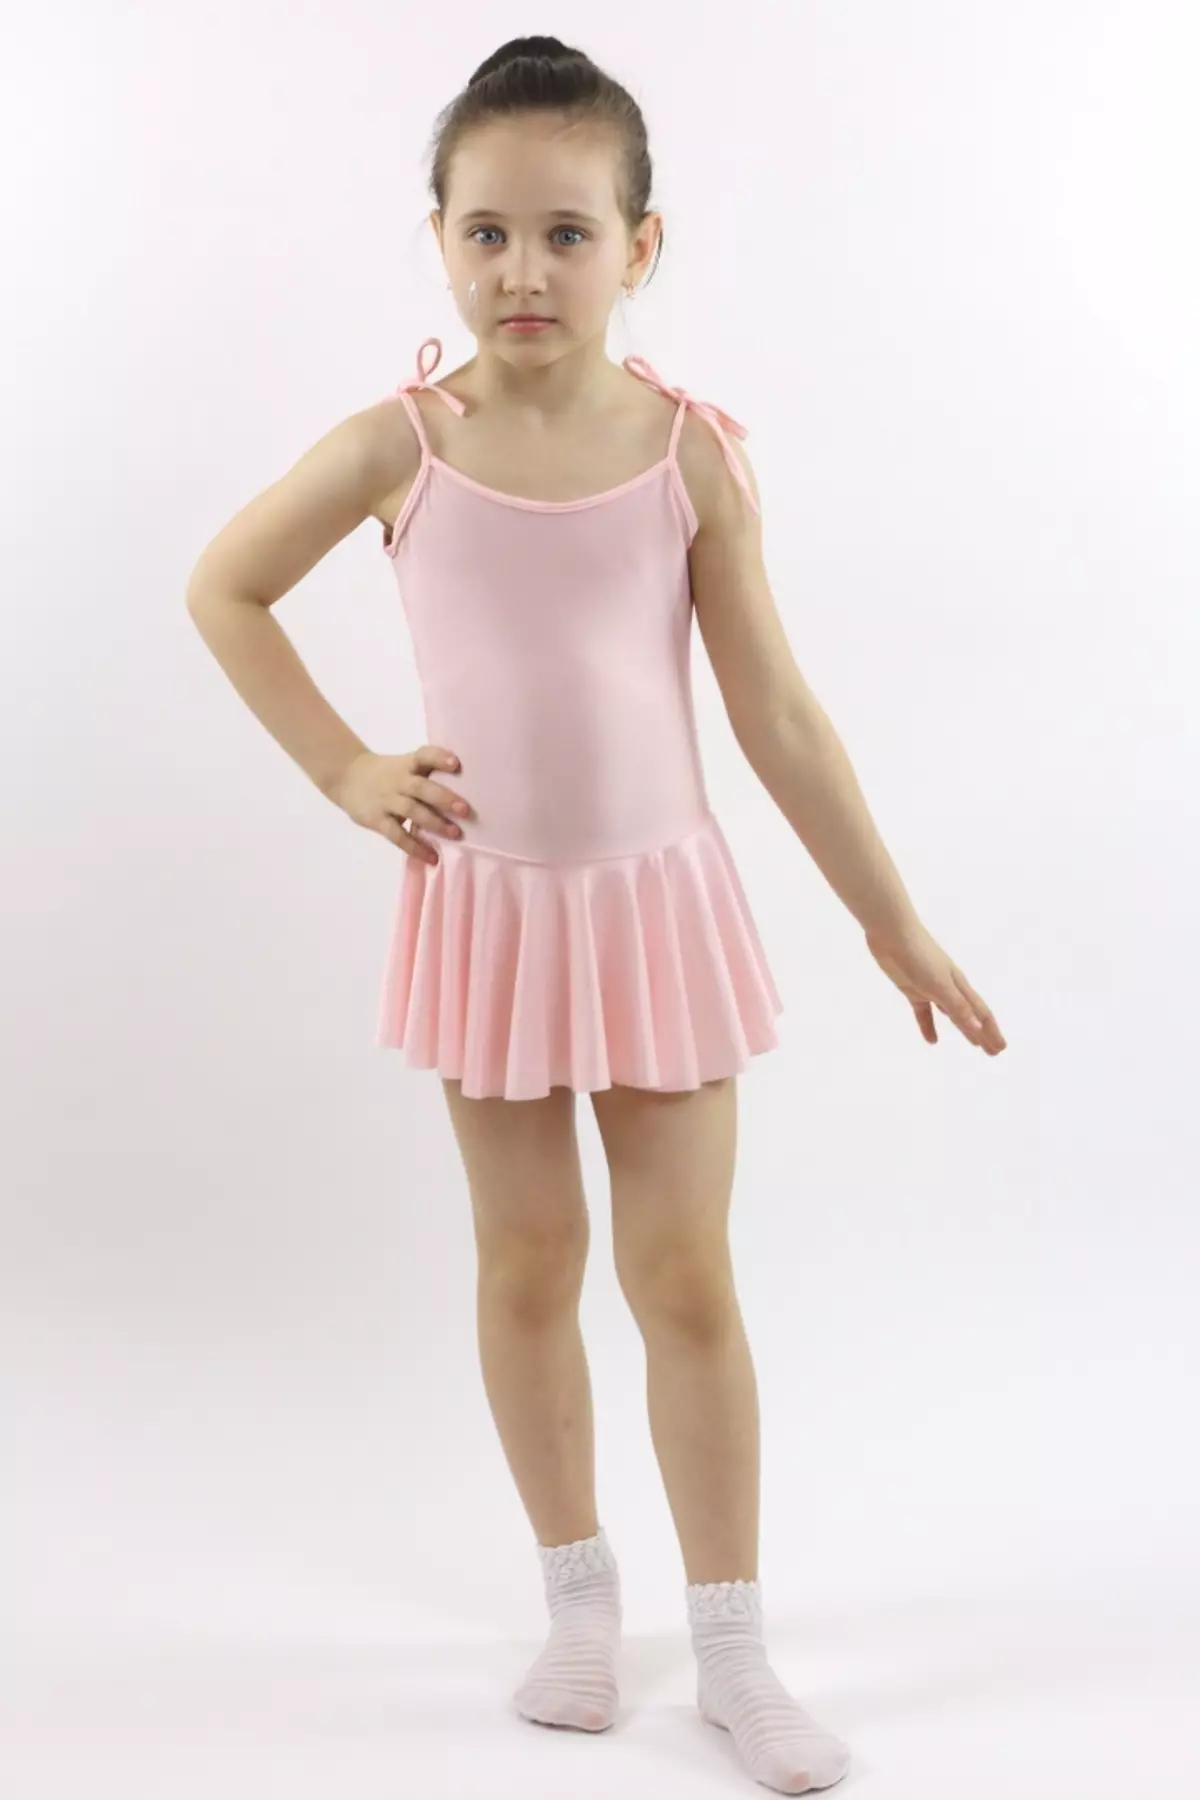 Gim Gimnastik dengan Skirt (35 Foto): Model dengan Skirt untuk Gimnastik Rhythmic 13393_32